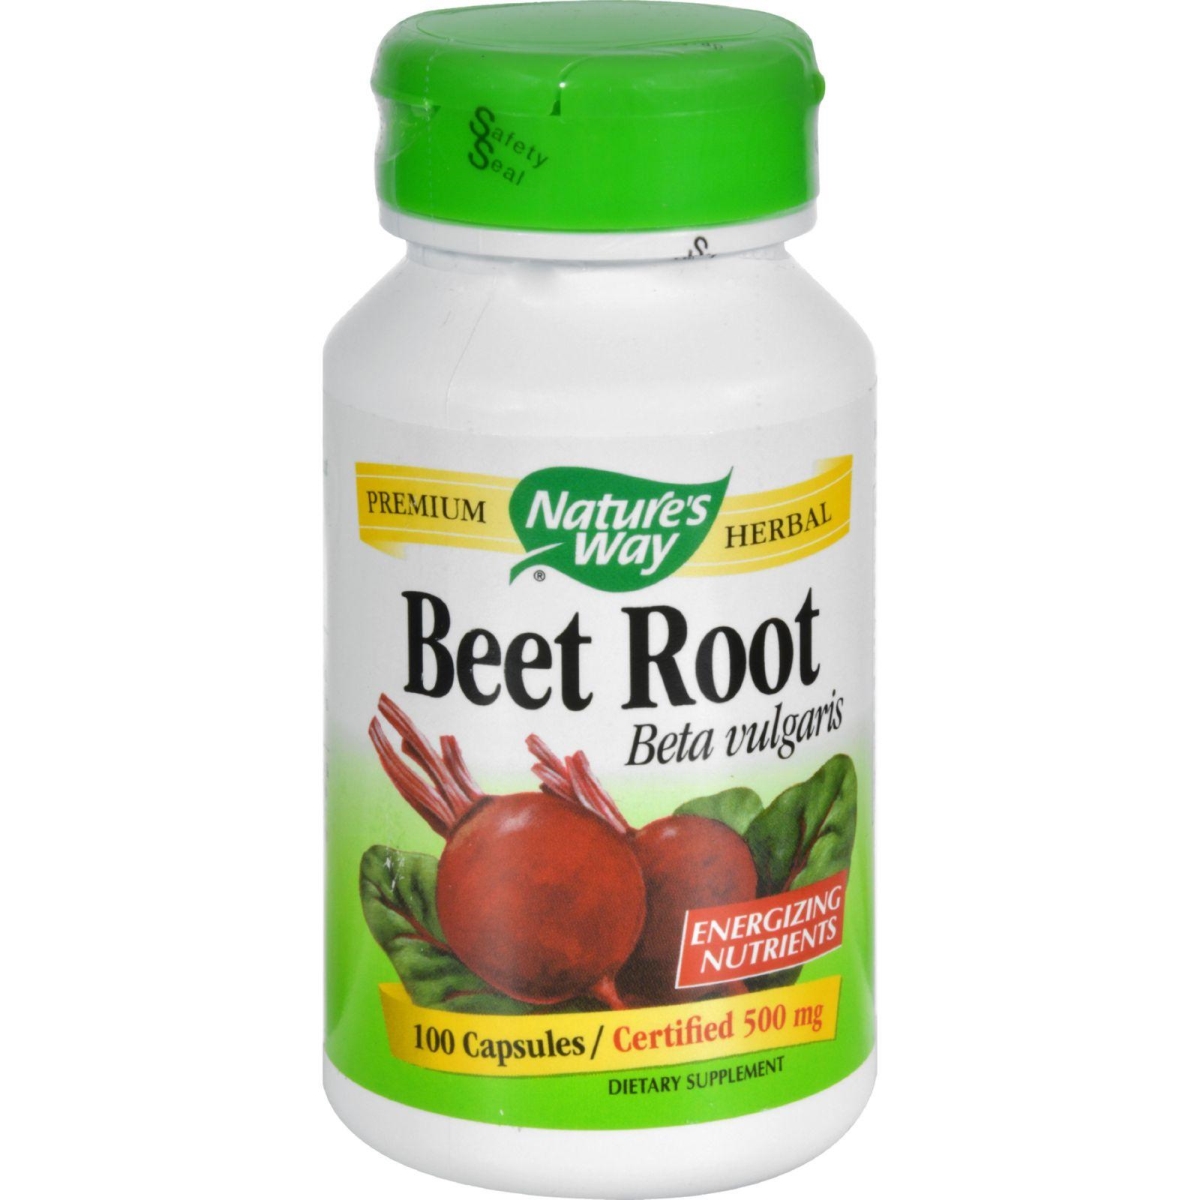 Hg0371609 Beet Root Beta Vulgaris - 100 Capsules